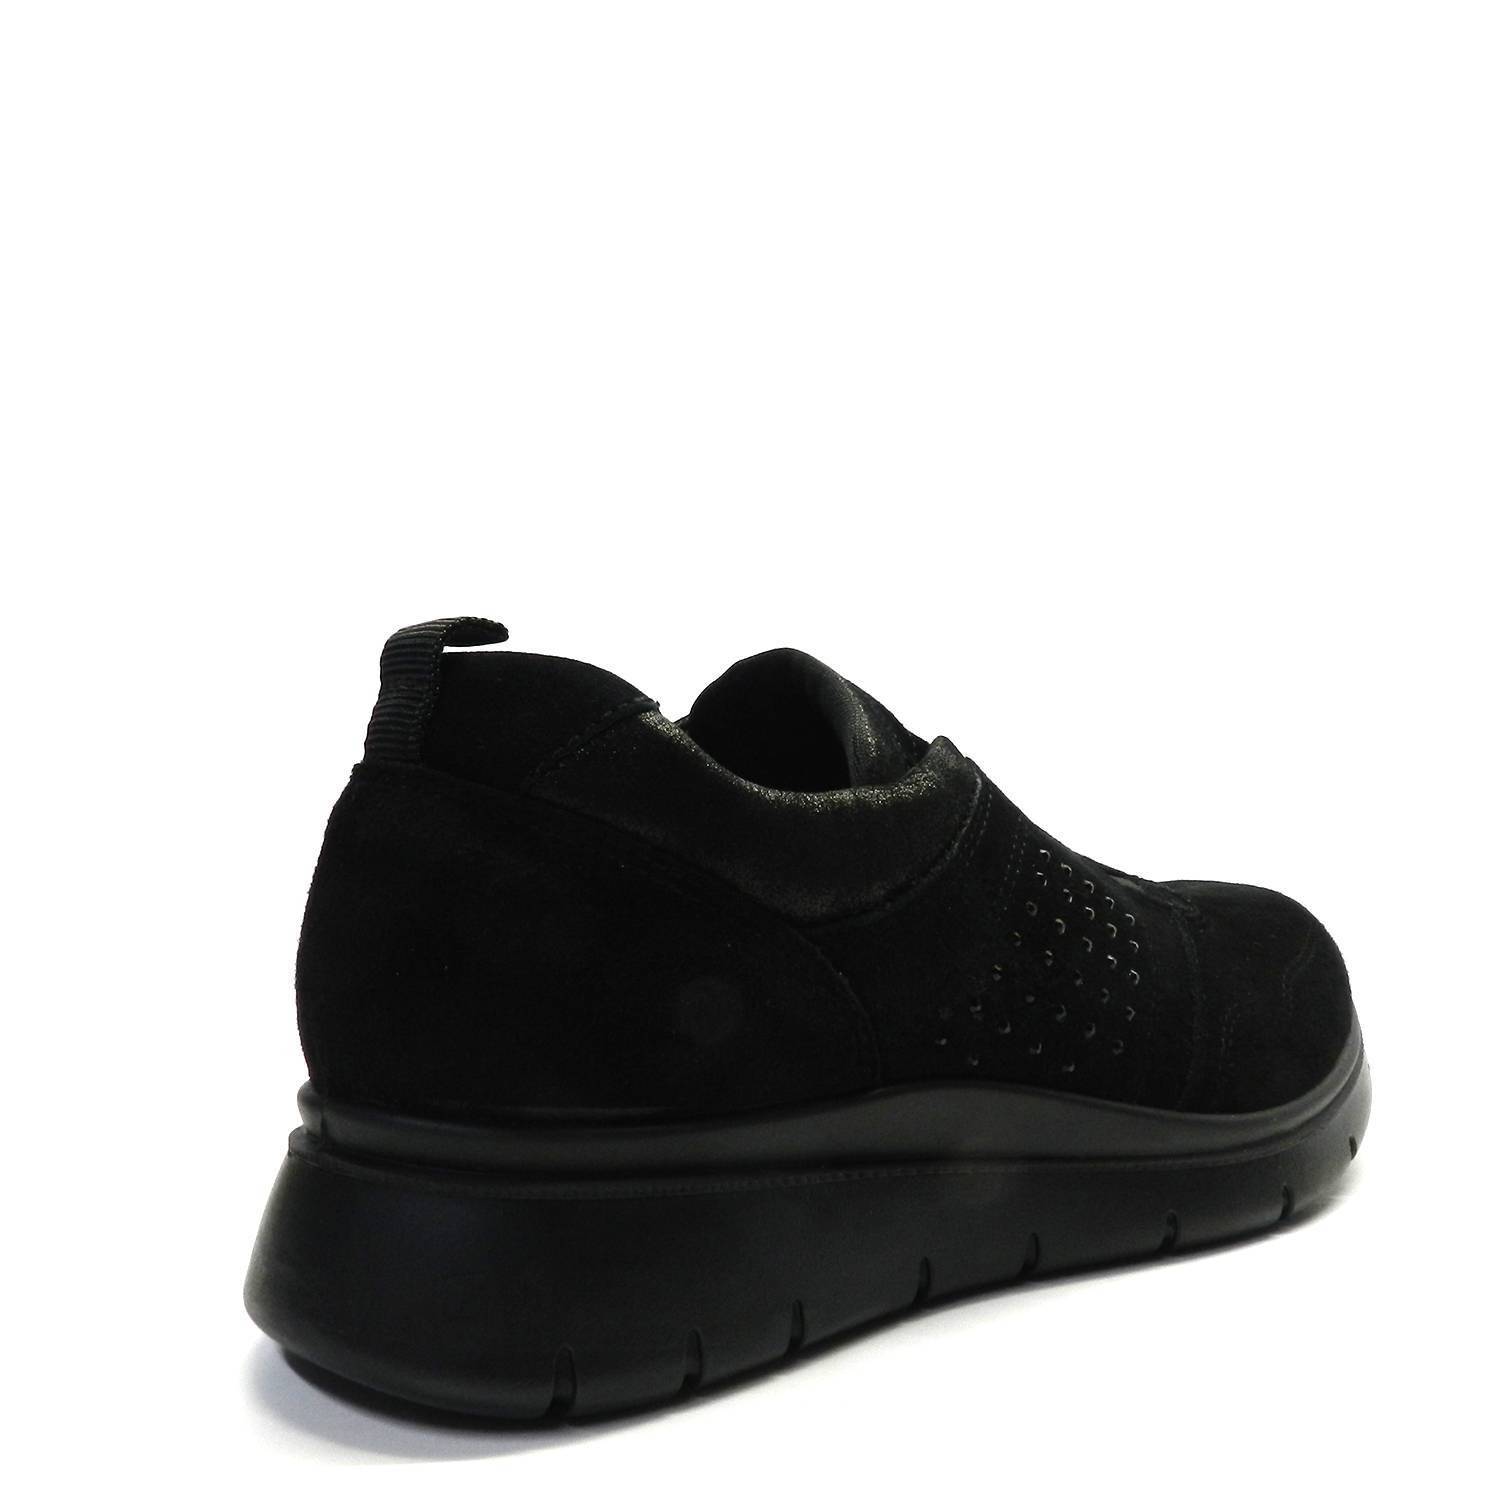 Zapatillas de la marca Imac, modelo 807231 en color negro. Zapatillas deportivas de ante, cierre con cordones. Suela de goma antideslizante. Plantilla extraíble de piel.